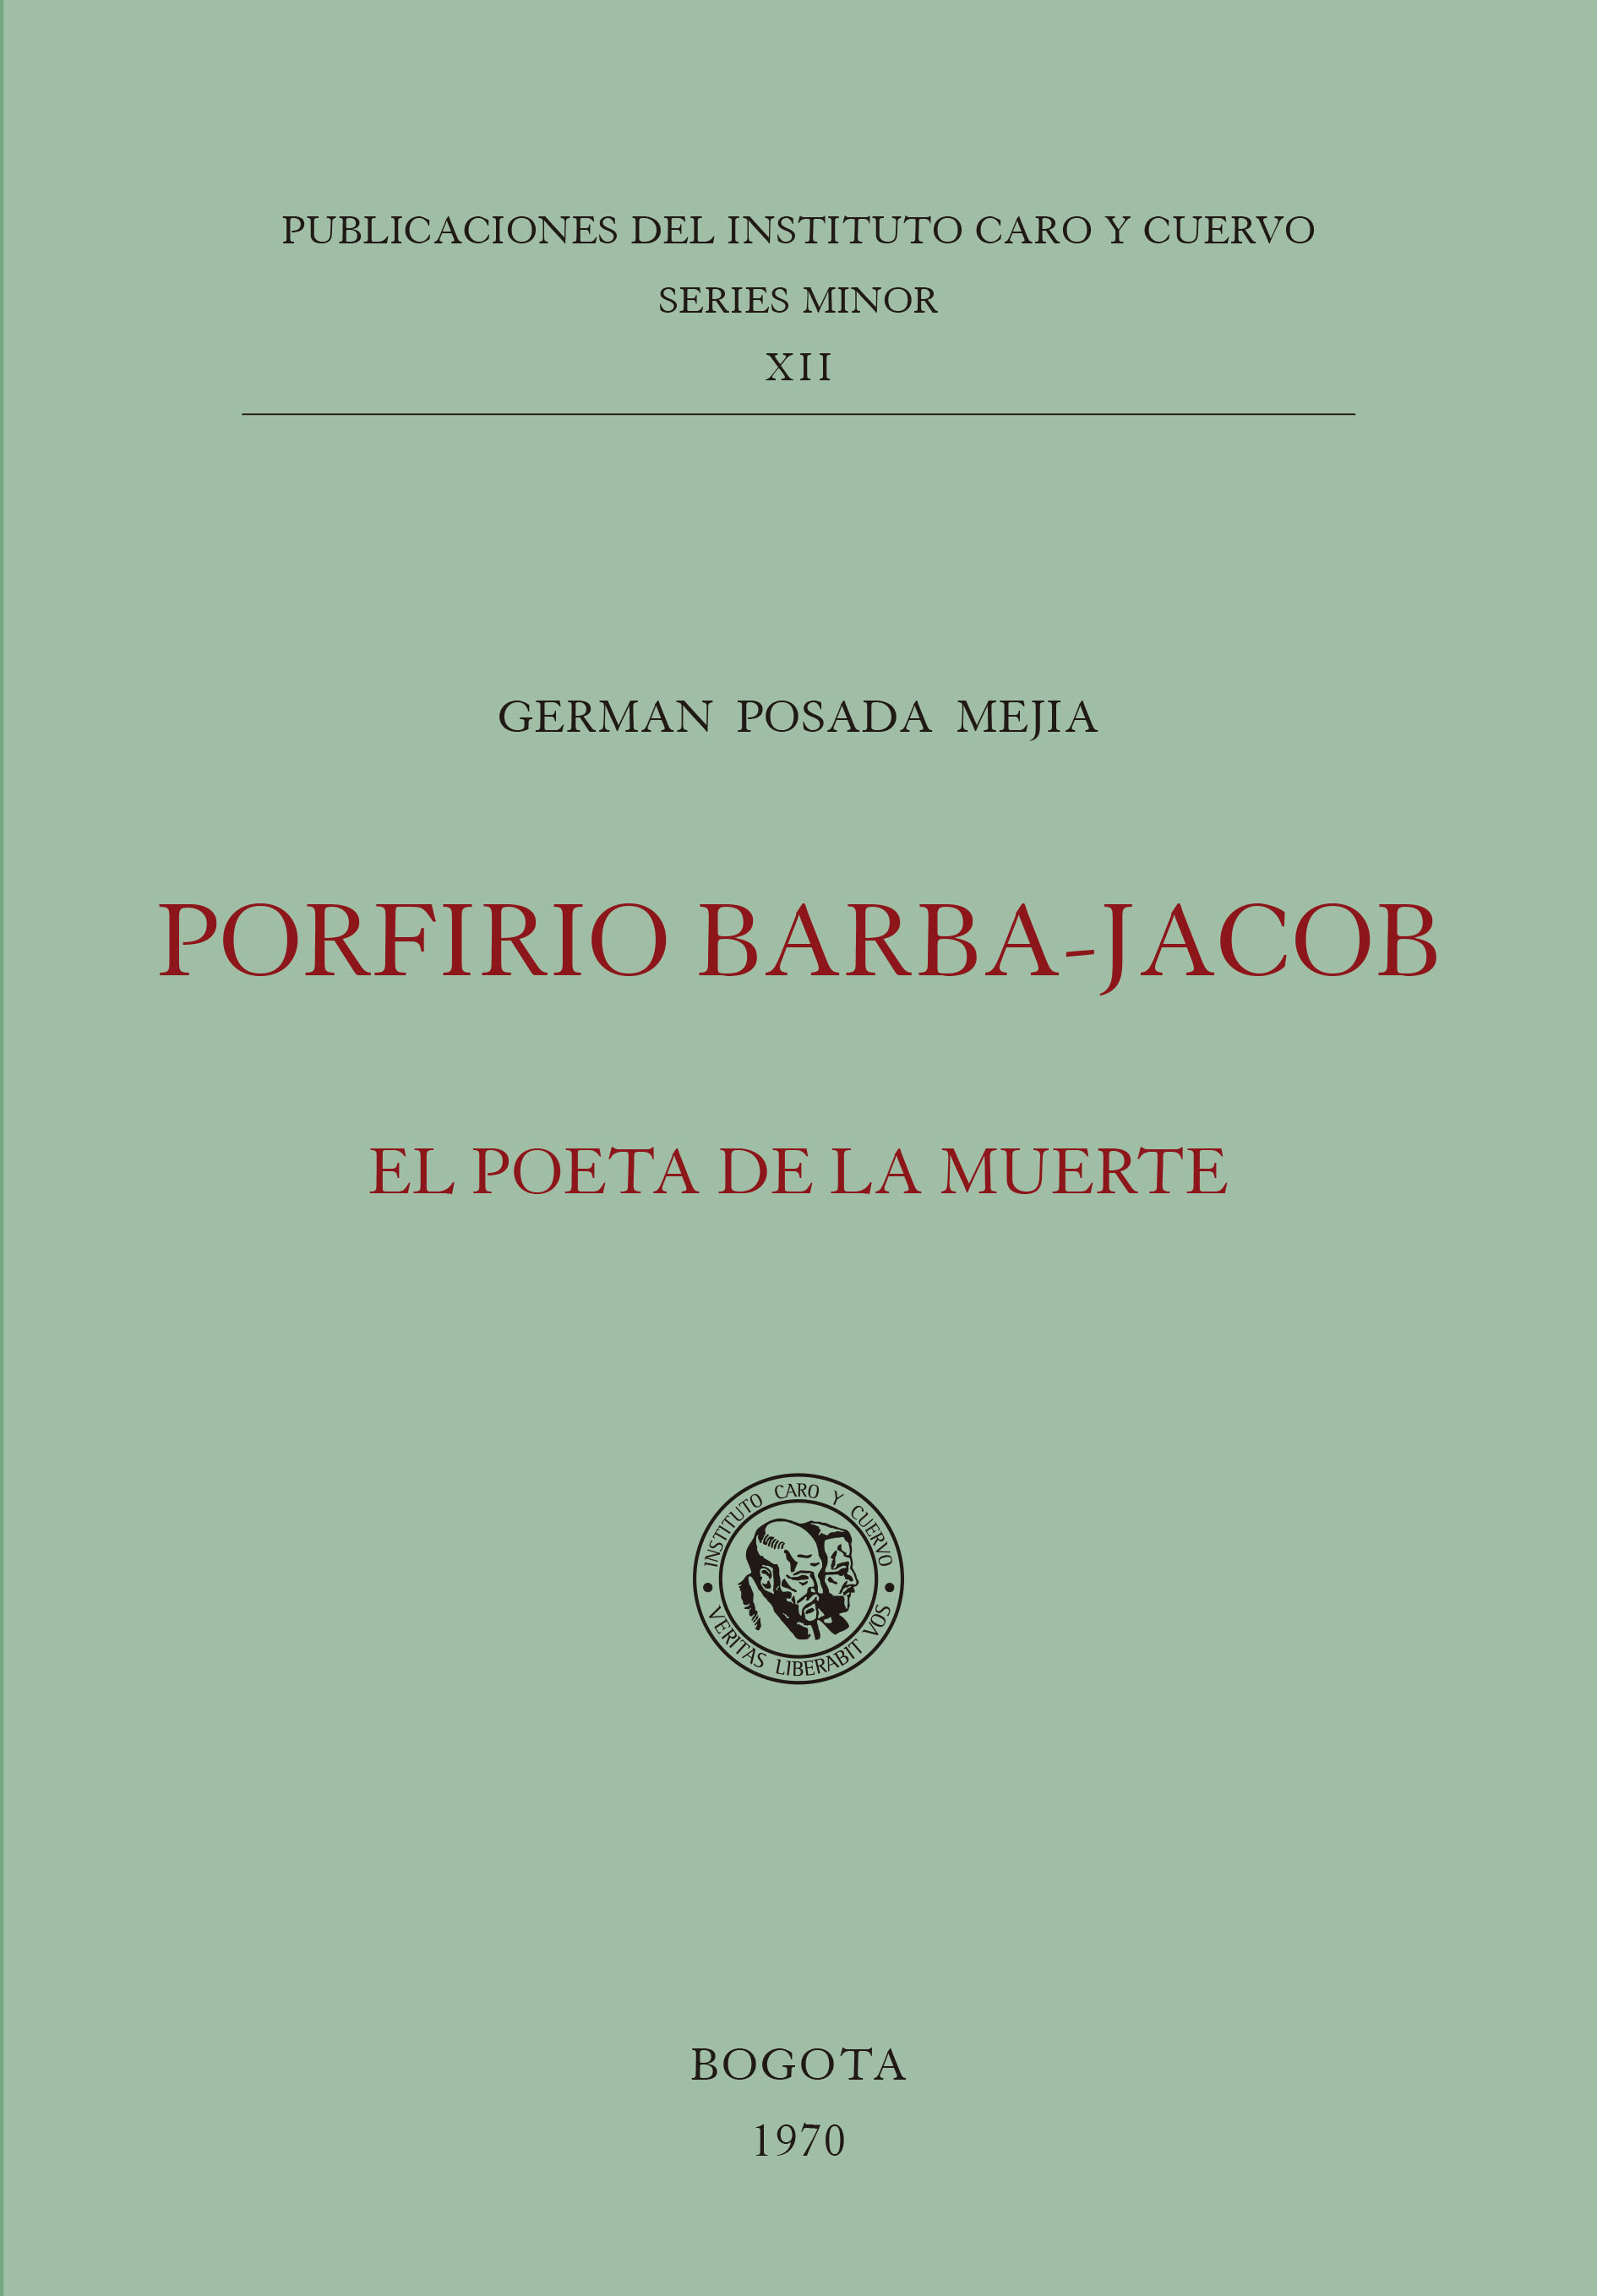 Porfirio Barba-Jacob, el poeta de la muerte